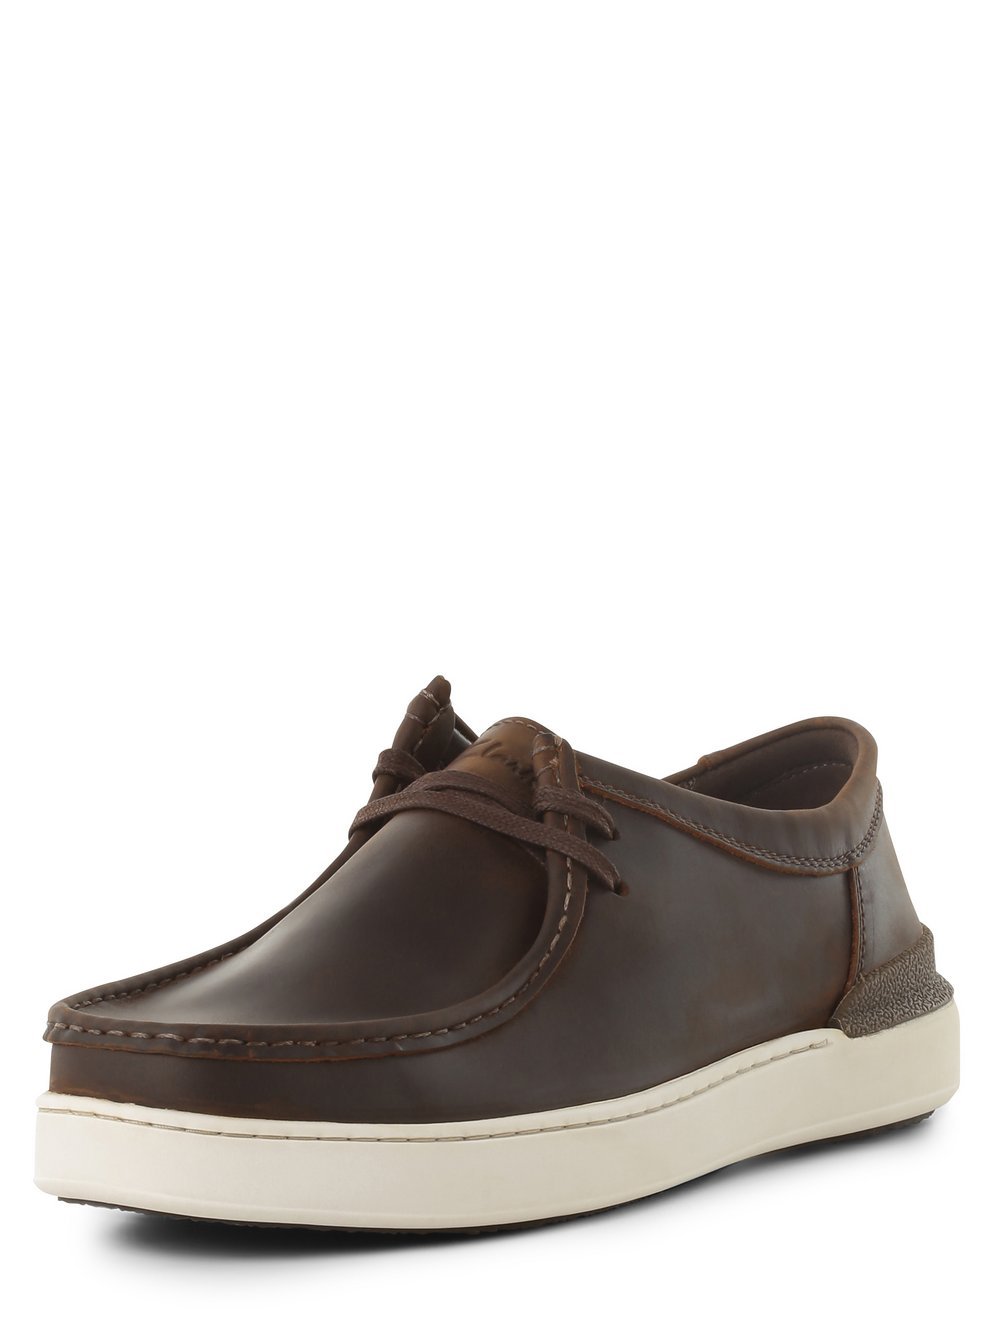 Clarks - Męskie buty żeglarskie ze skóry  CourtLiteWally, brązowy